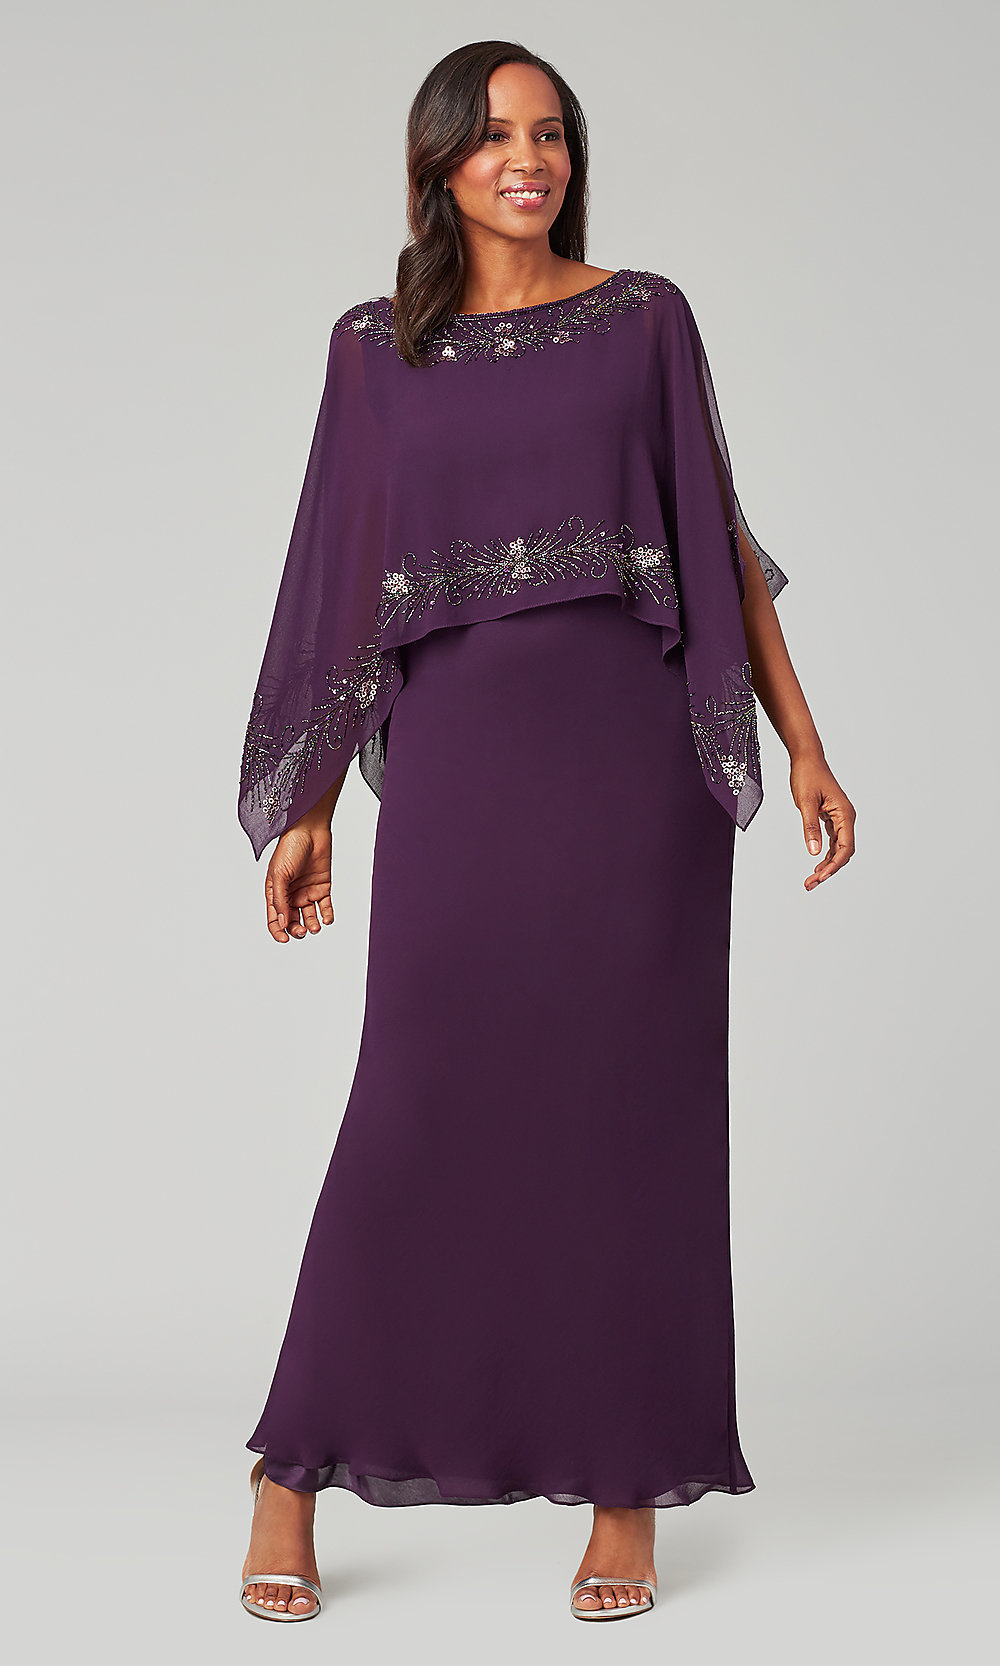 Long Chiffon Plum Purple MOB Dress with ...